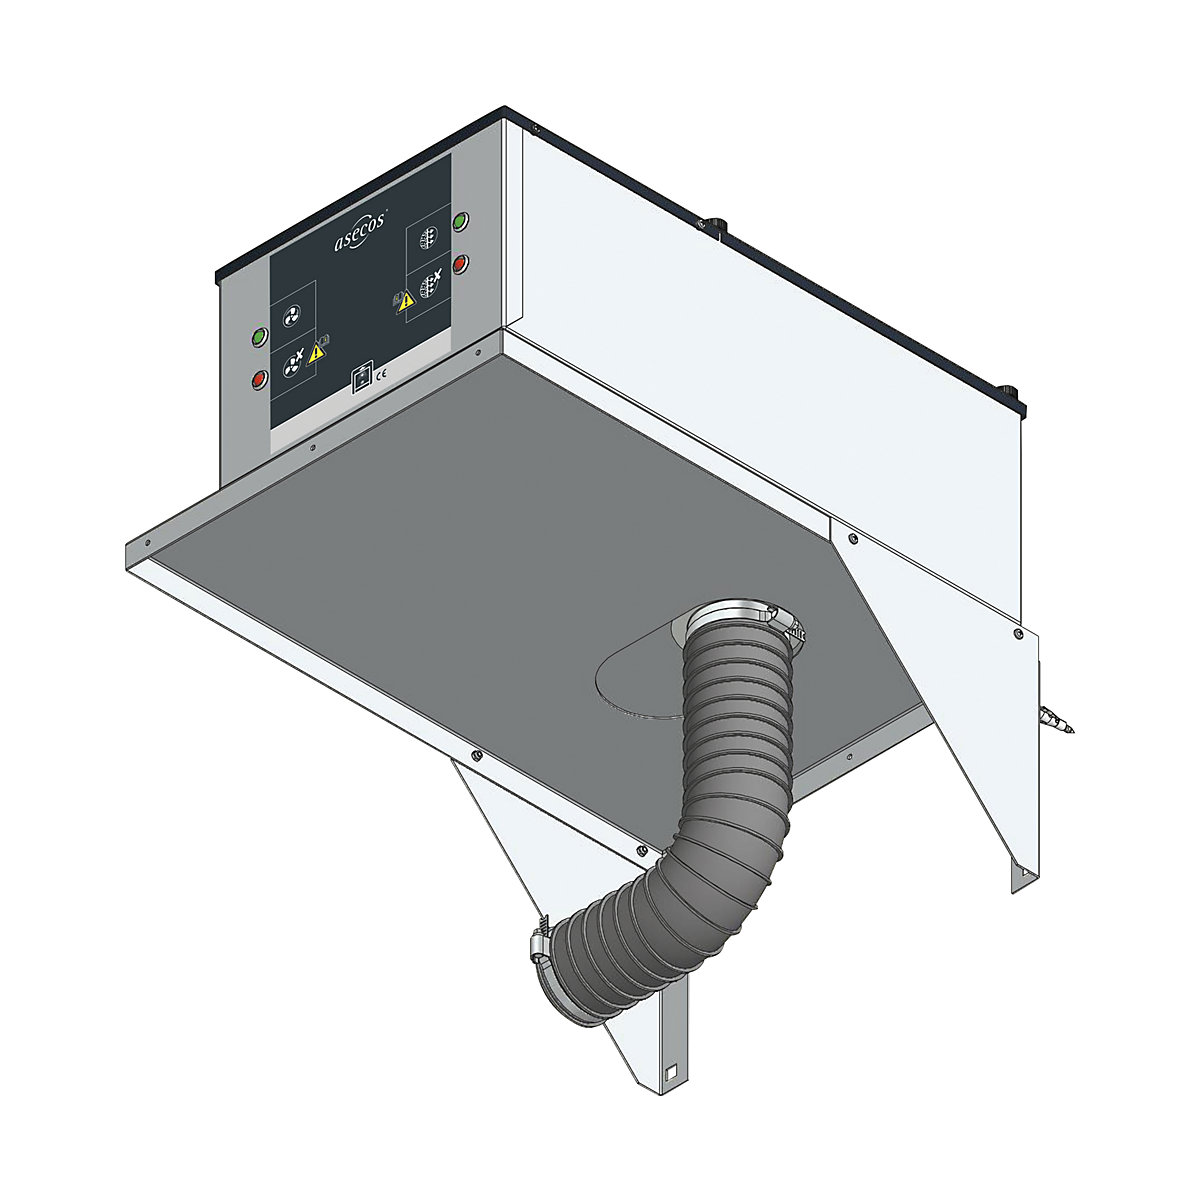 Elemento filtrante de ar circulante com adaptador para montagem na parede (acessório)